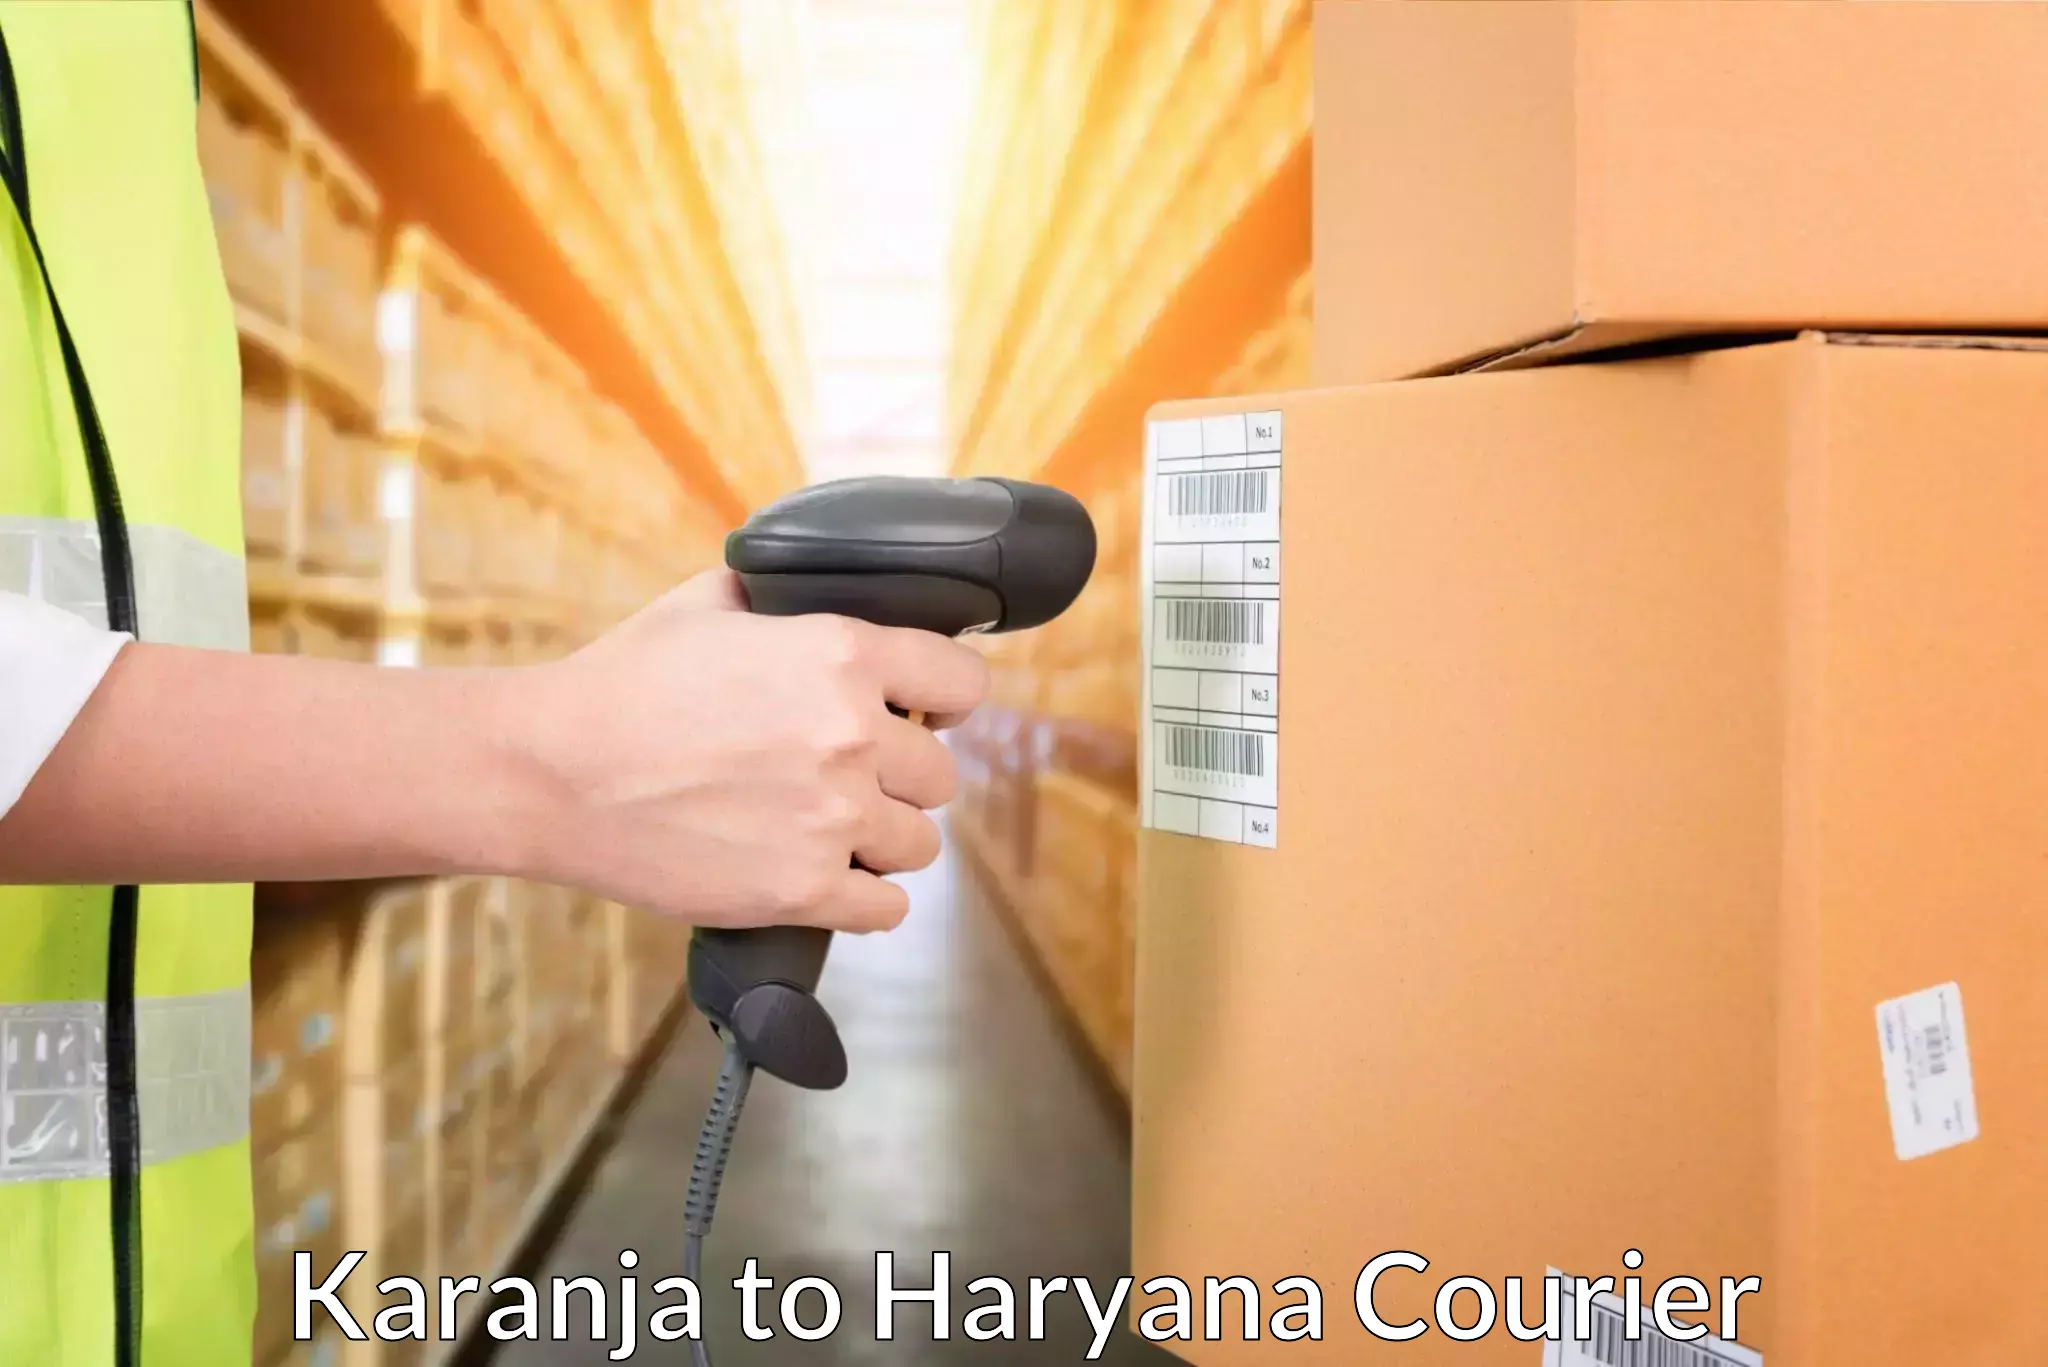 Tailored shipping plans Karanja to Chaudhary Charan Singh Haryana Agricultural University Hisar